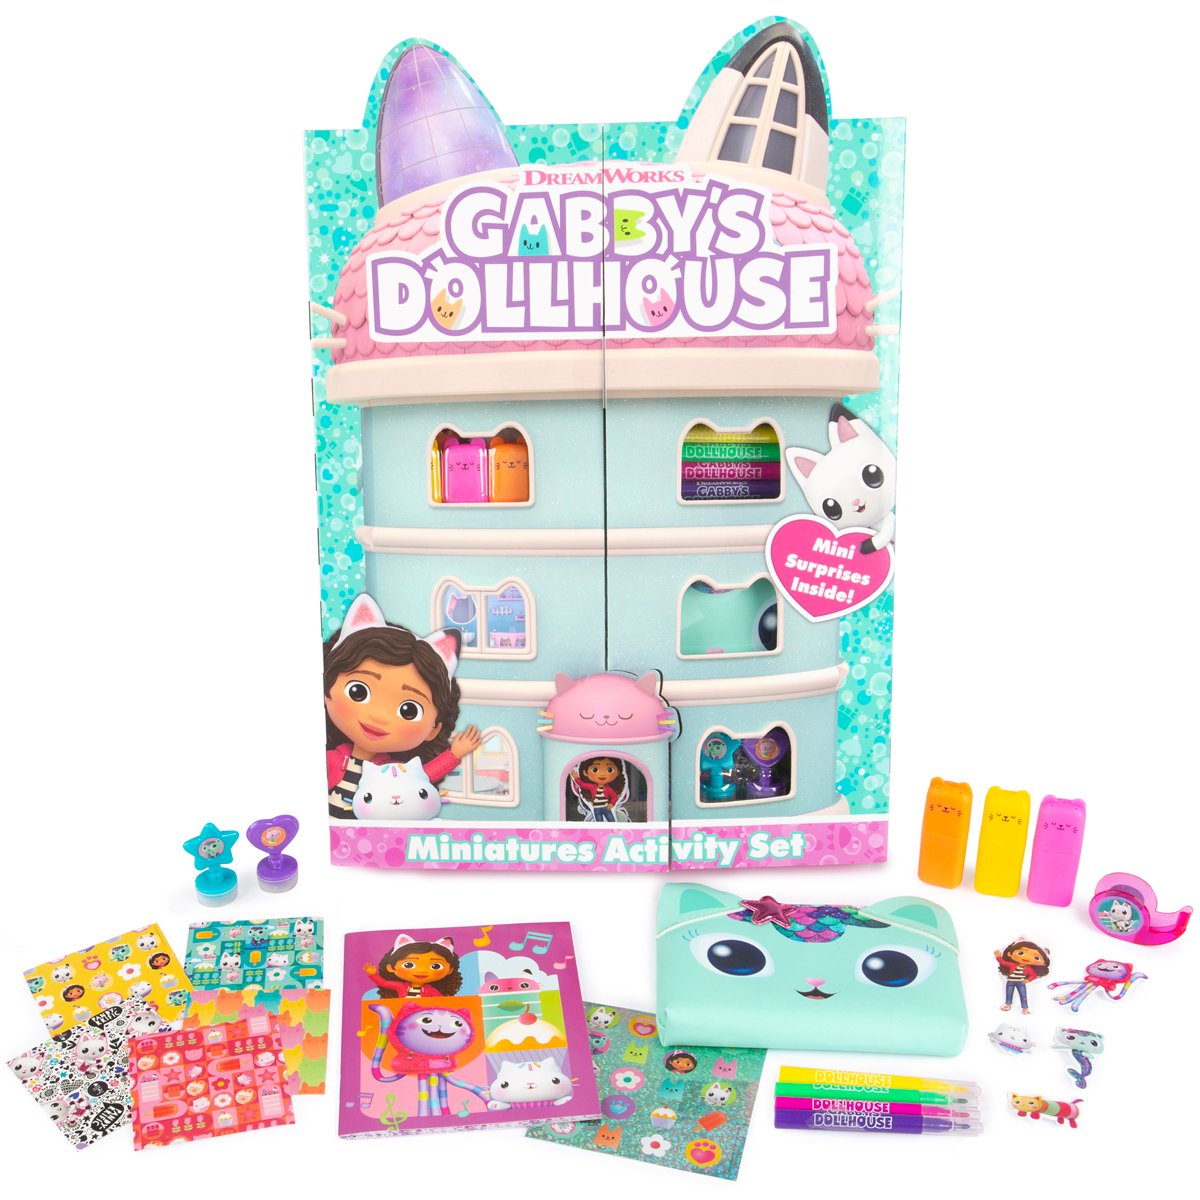 Gabby's Dollhouse Miniatures Activity Set | Toys Toys Toys UK